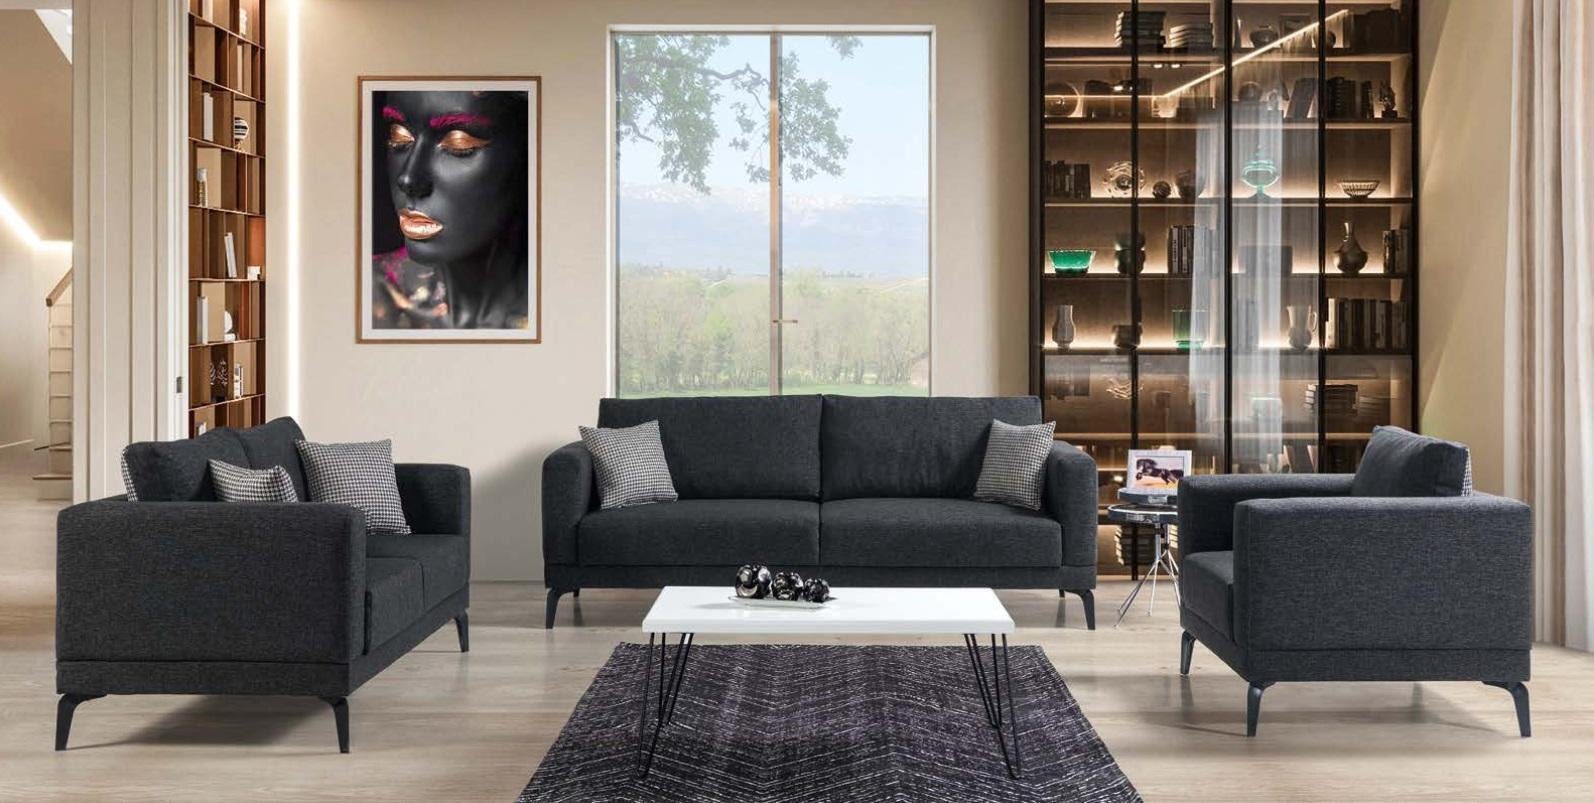 JVmoebel Wohnzimmer-Set Sofagarnitur 3+2+1 Sitzer Textil Modern Komplett Sessel Sofa Luxus, (3 Sitzer / 2 Sitzer / Sessel), Made In Europe